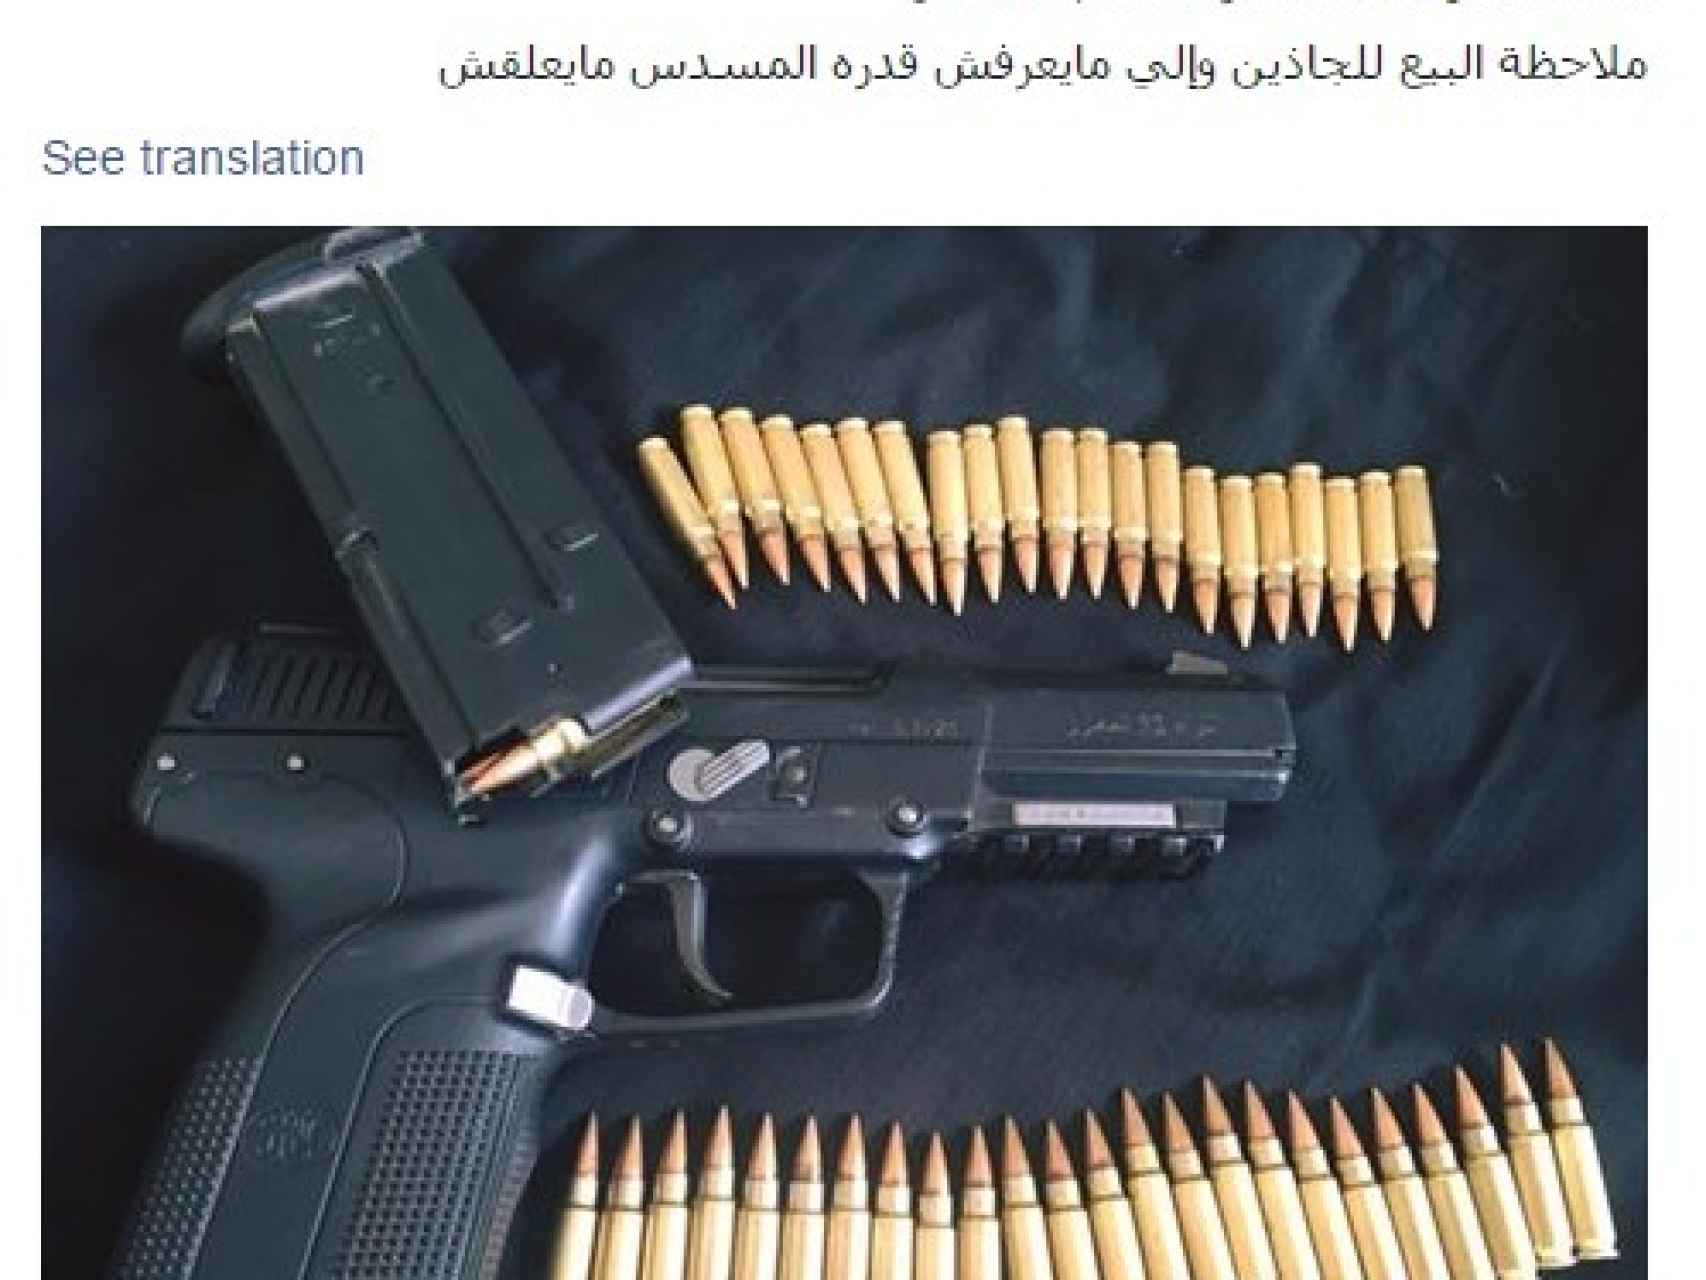 Una pistola FN 5-7 de fabricación belga a la venta en Libia.